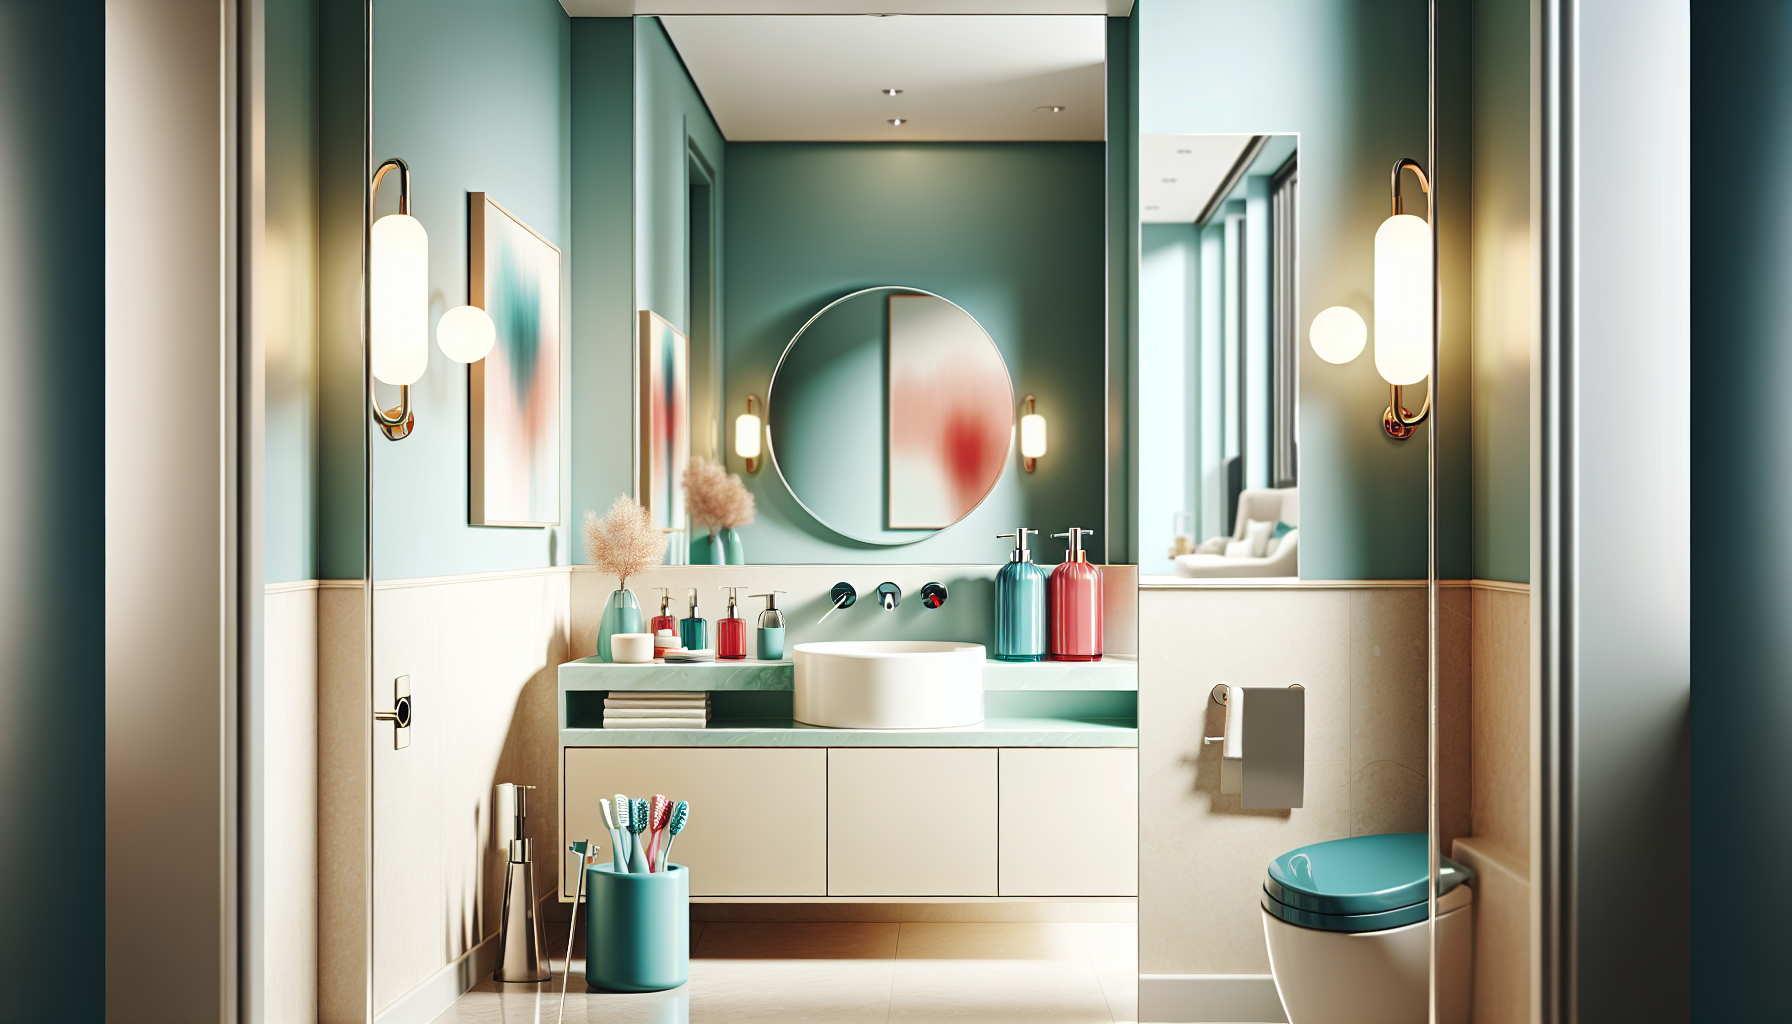 Badezimmer mit neuen Farben und Accessoires gestalten